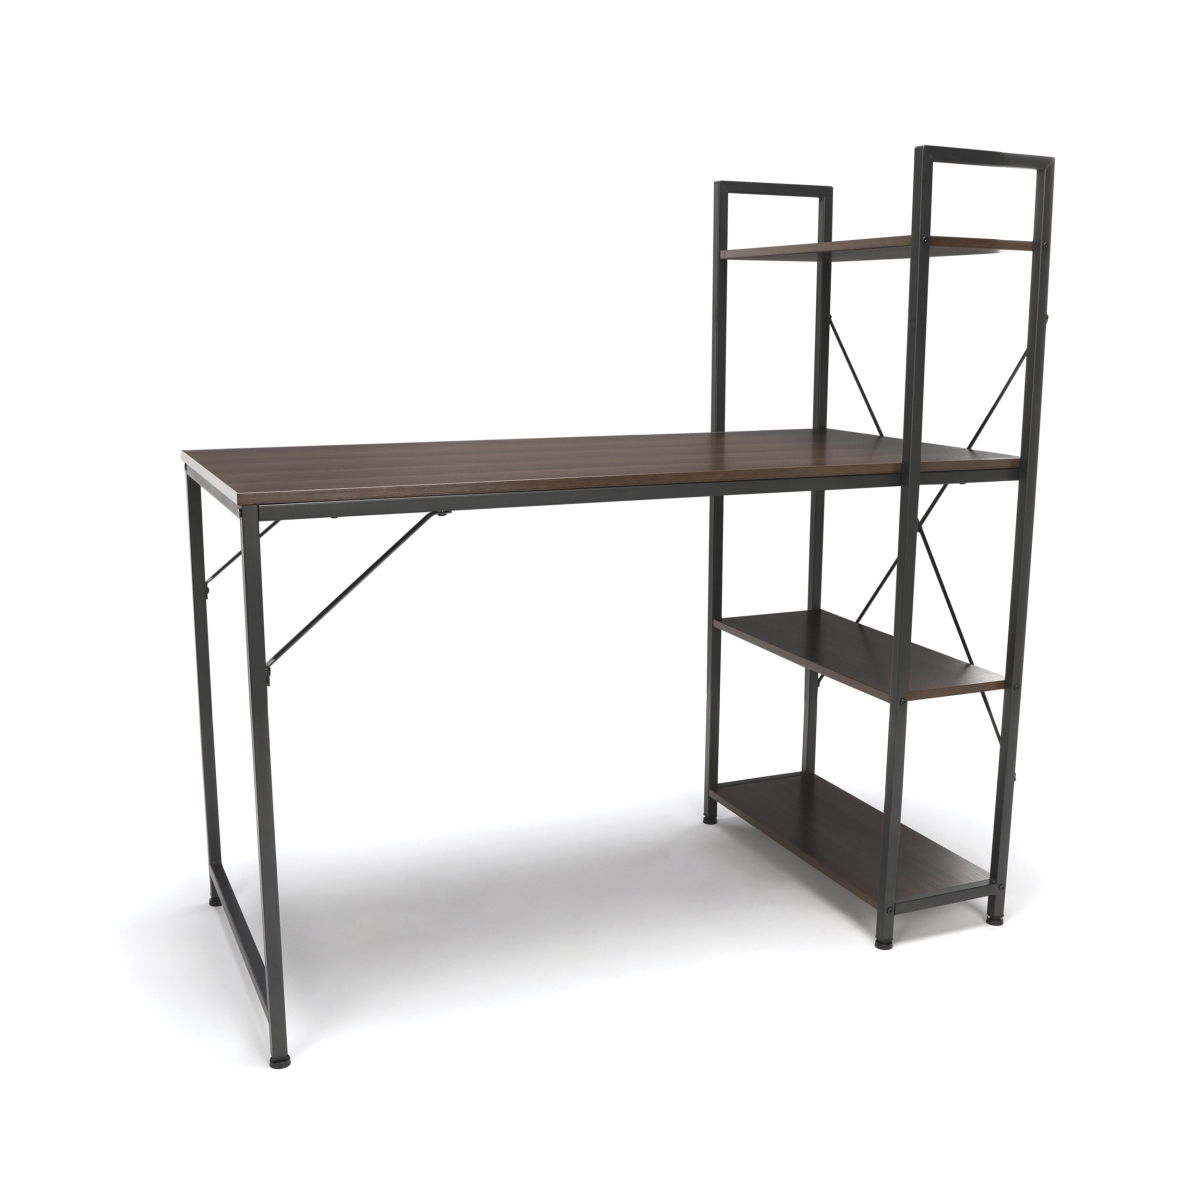 Ess-1004-gry-wnt Combination Desk With 4 Shelf Unit, Walnut With Gray Frame